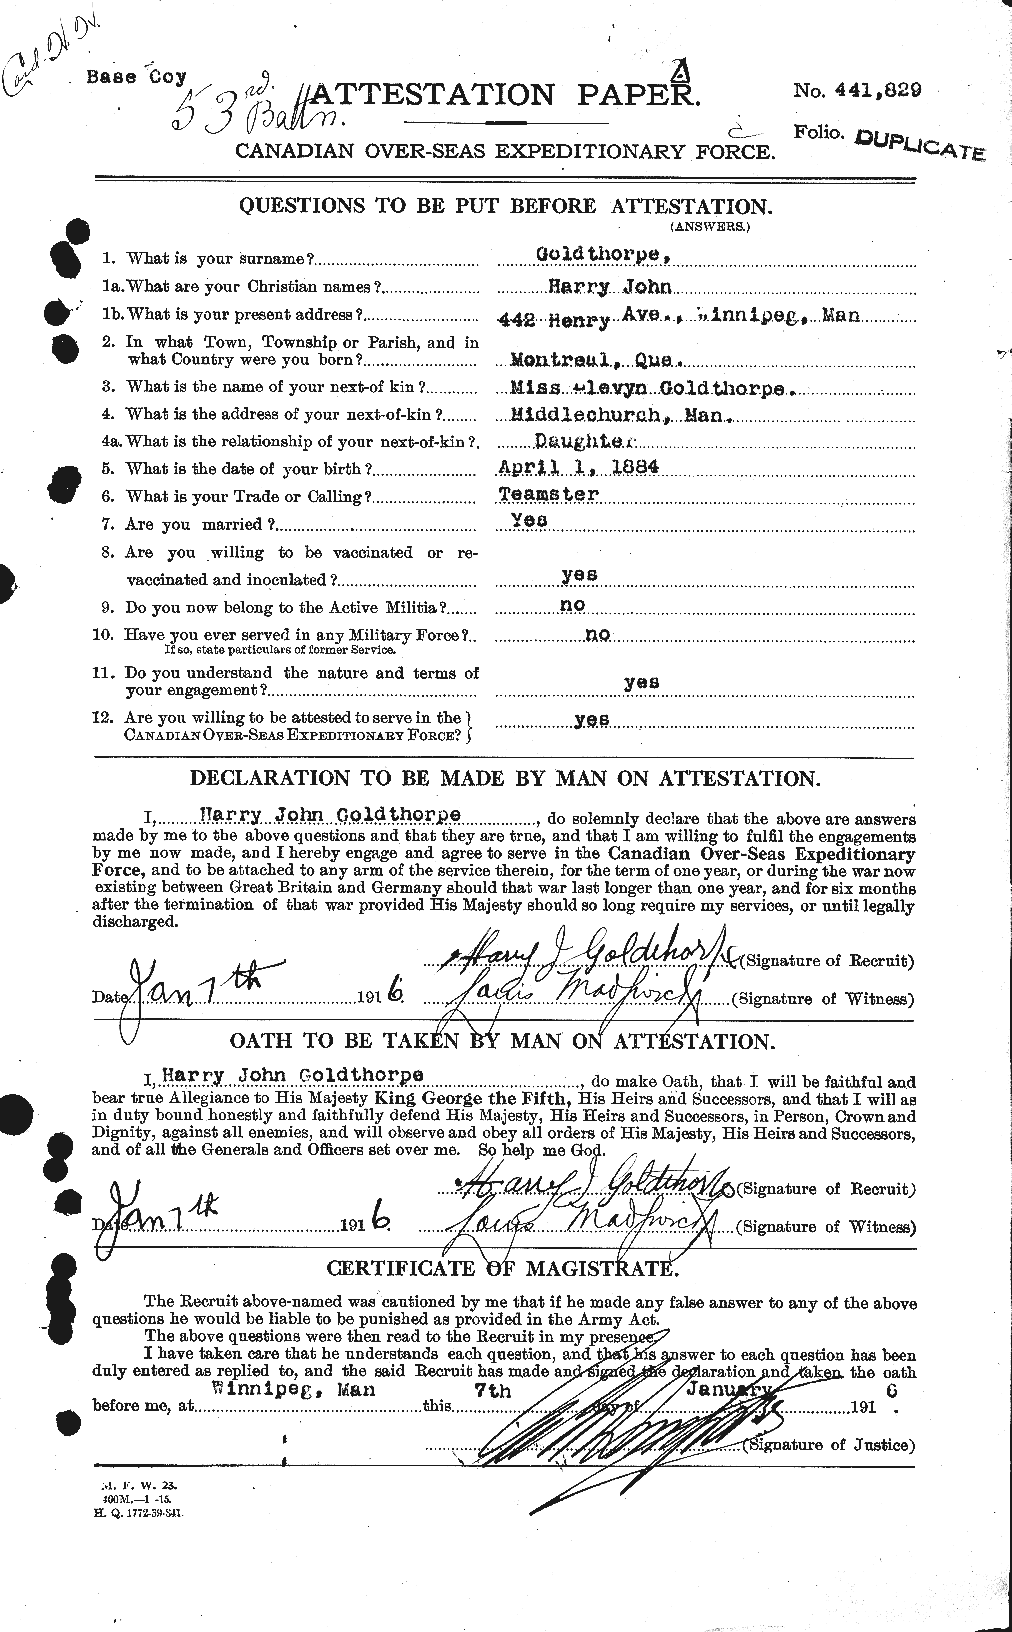 Dossiers du Personnel de la Première Guerre mondiale - CEC 354164a